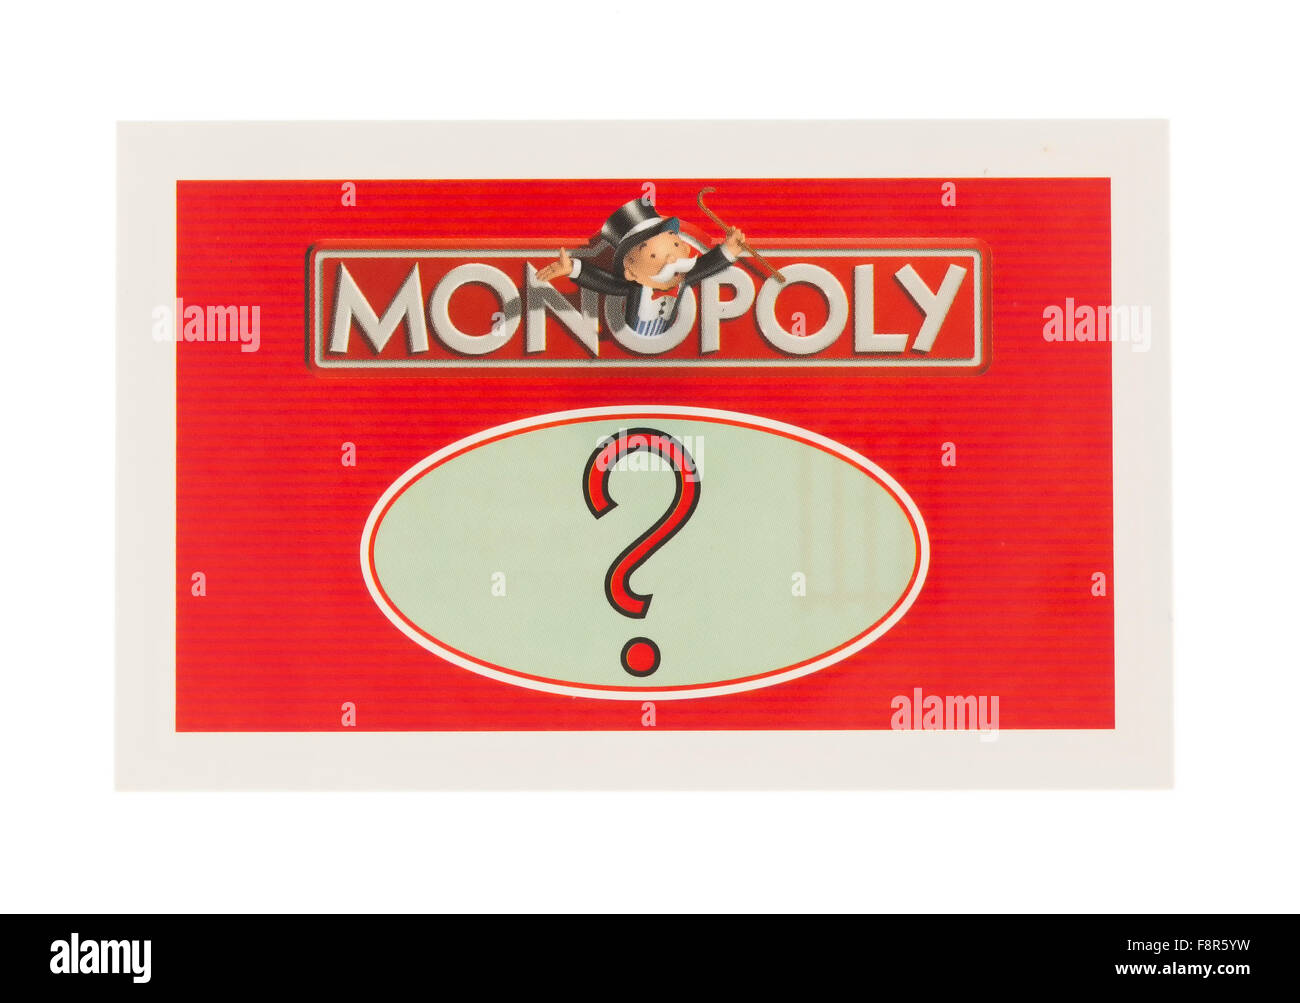 Edition anglais du monopole montrant une carte Chance, Le classique jeu d'échange de Parker Brothers Banque D'Images